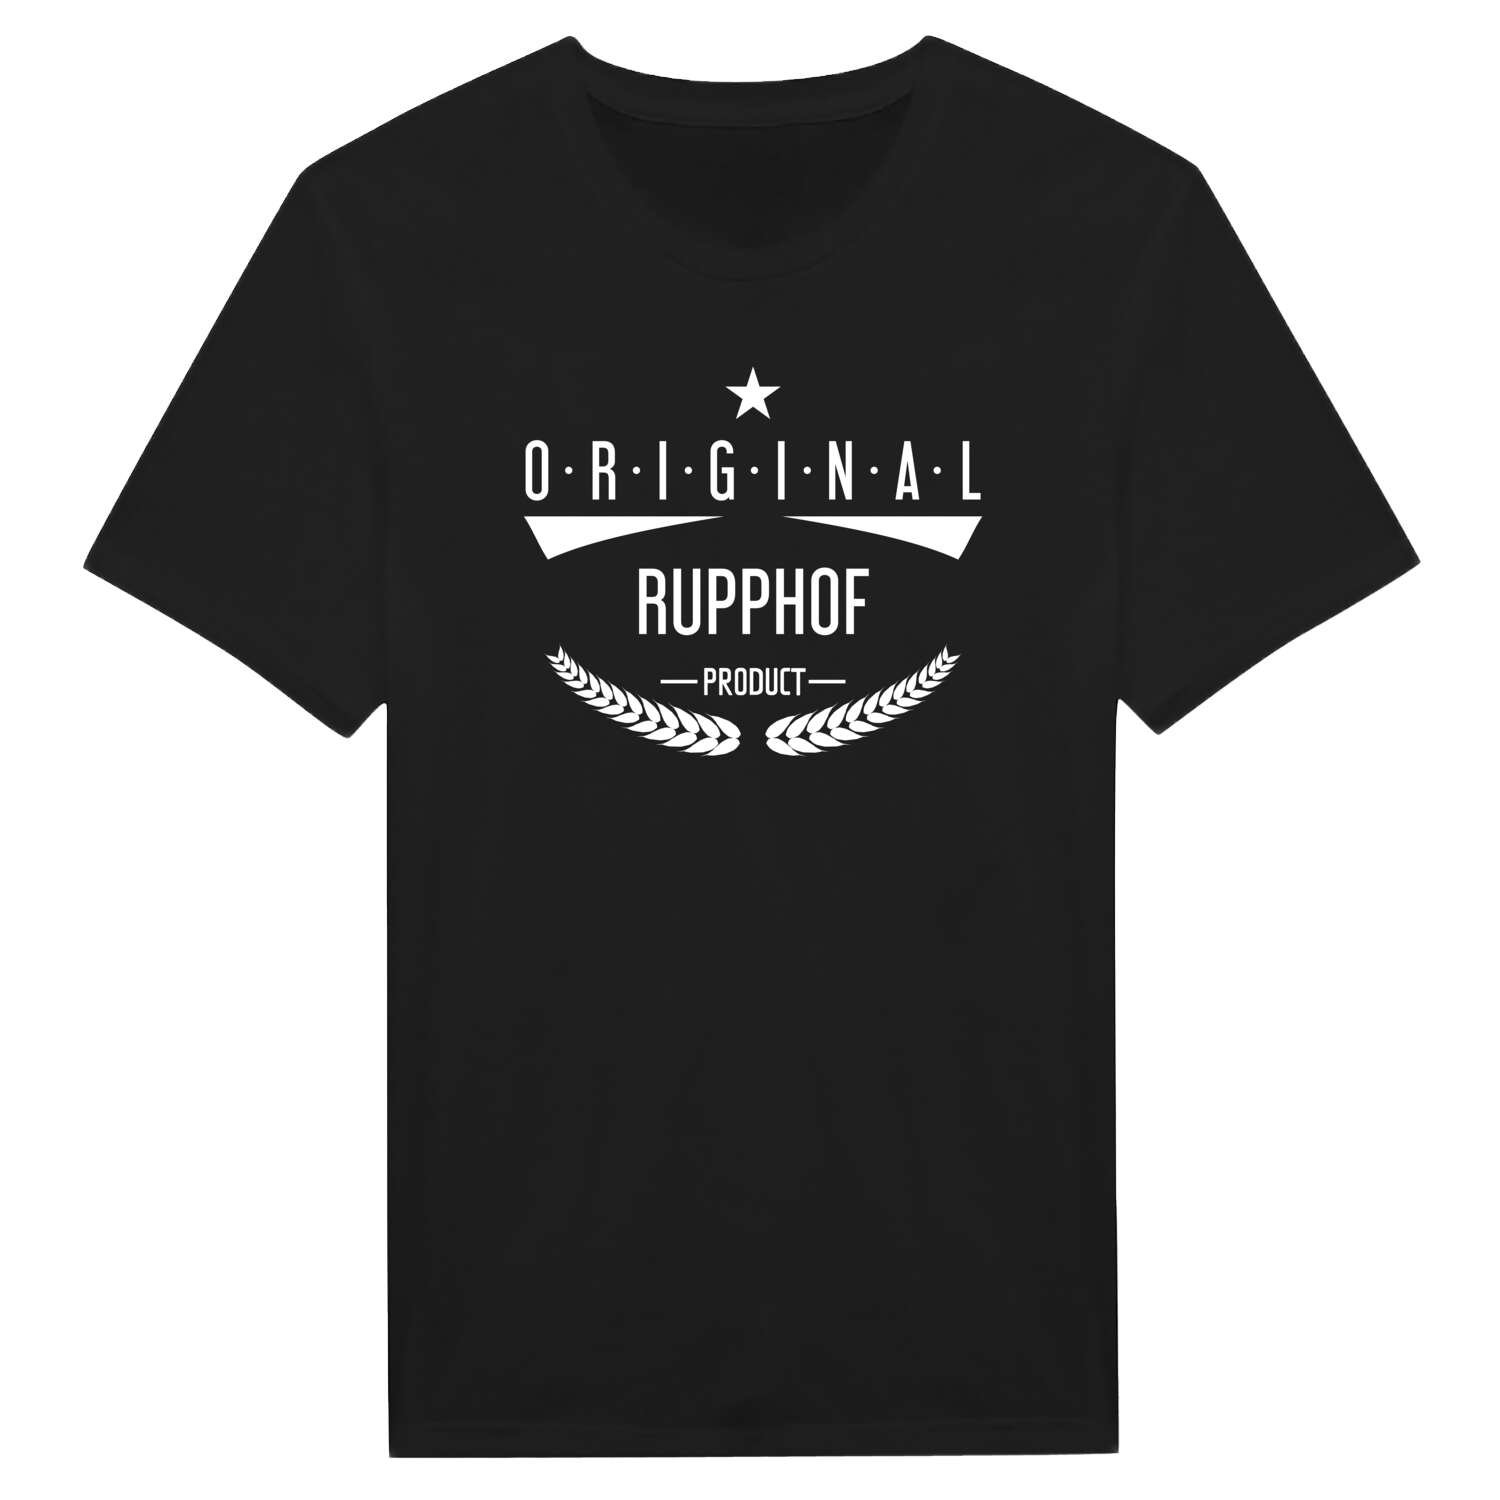 Rupphof T-Shirt »Original Product«